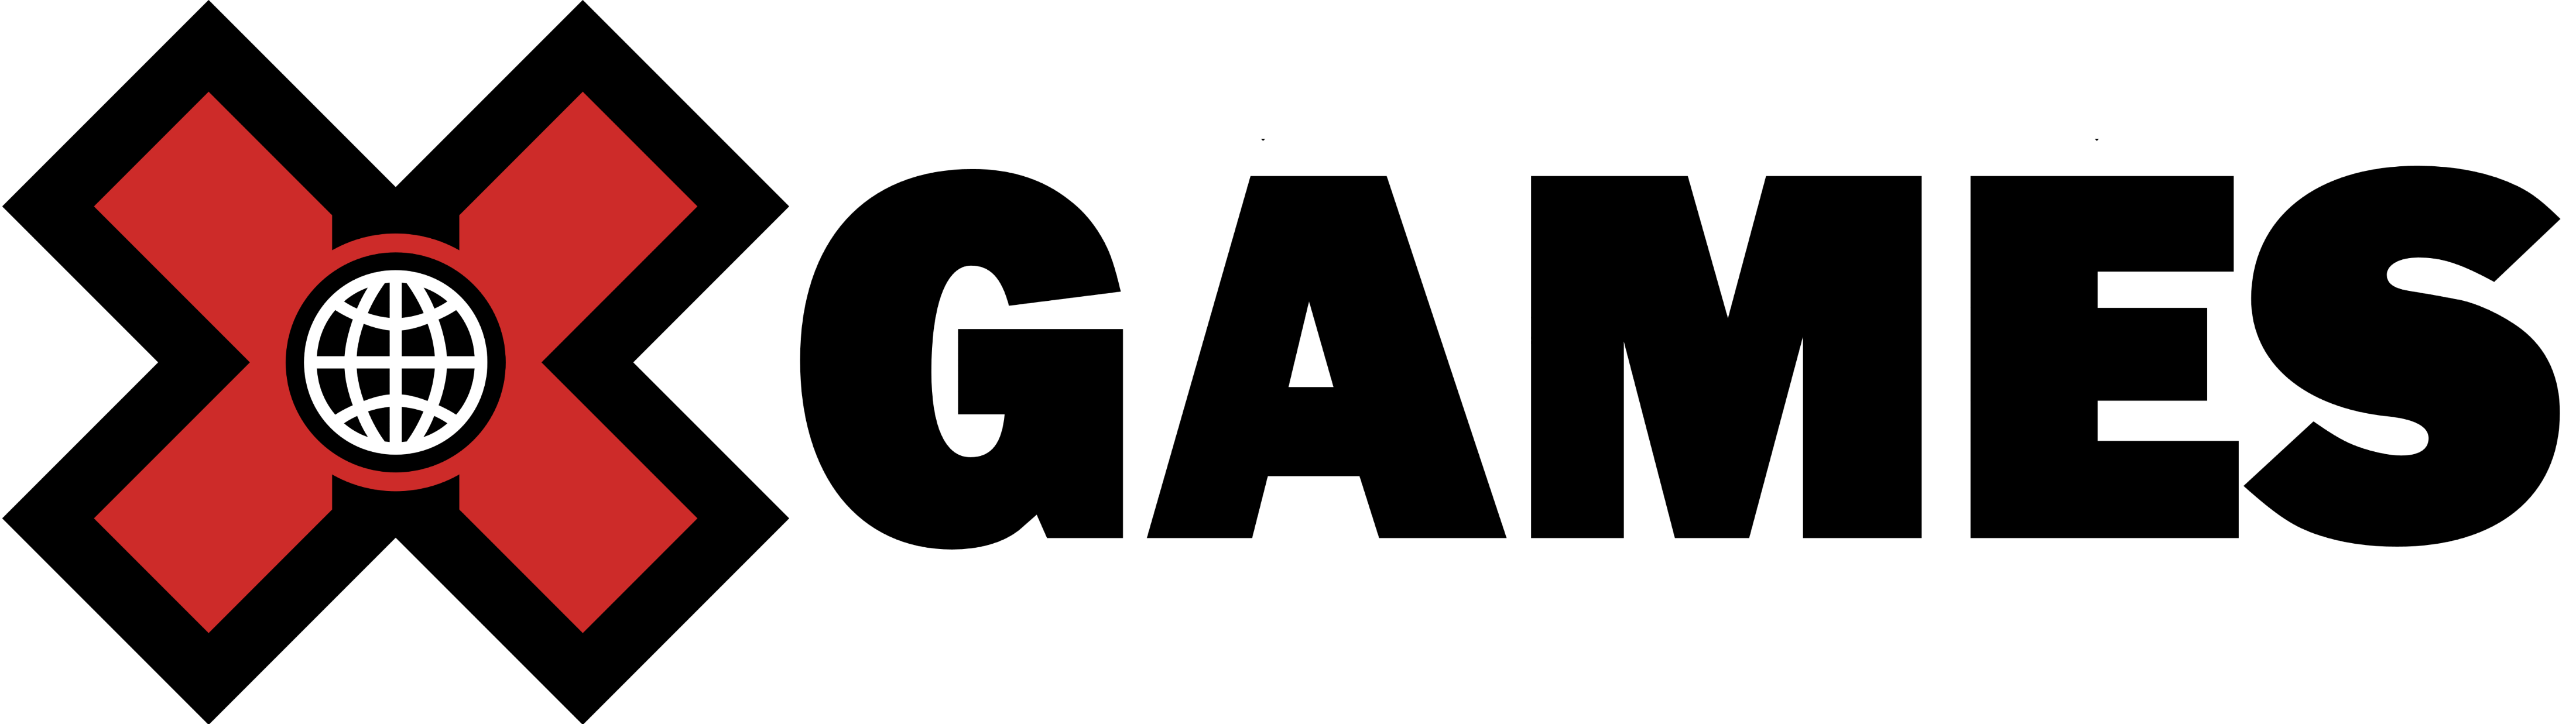 X Games Logo - X Games – Logos Download